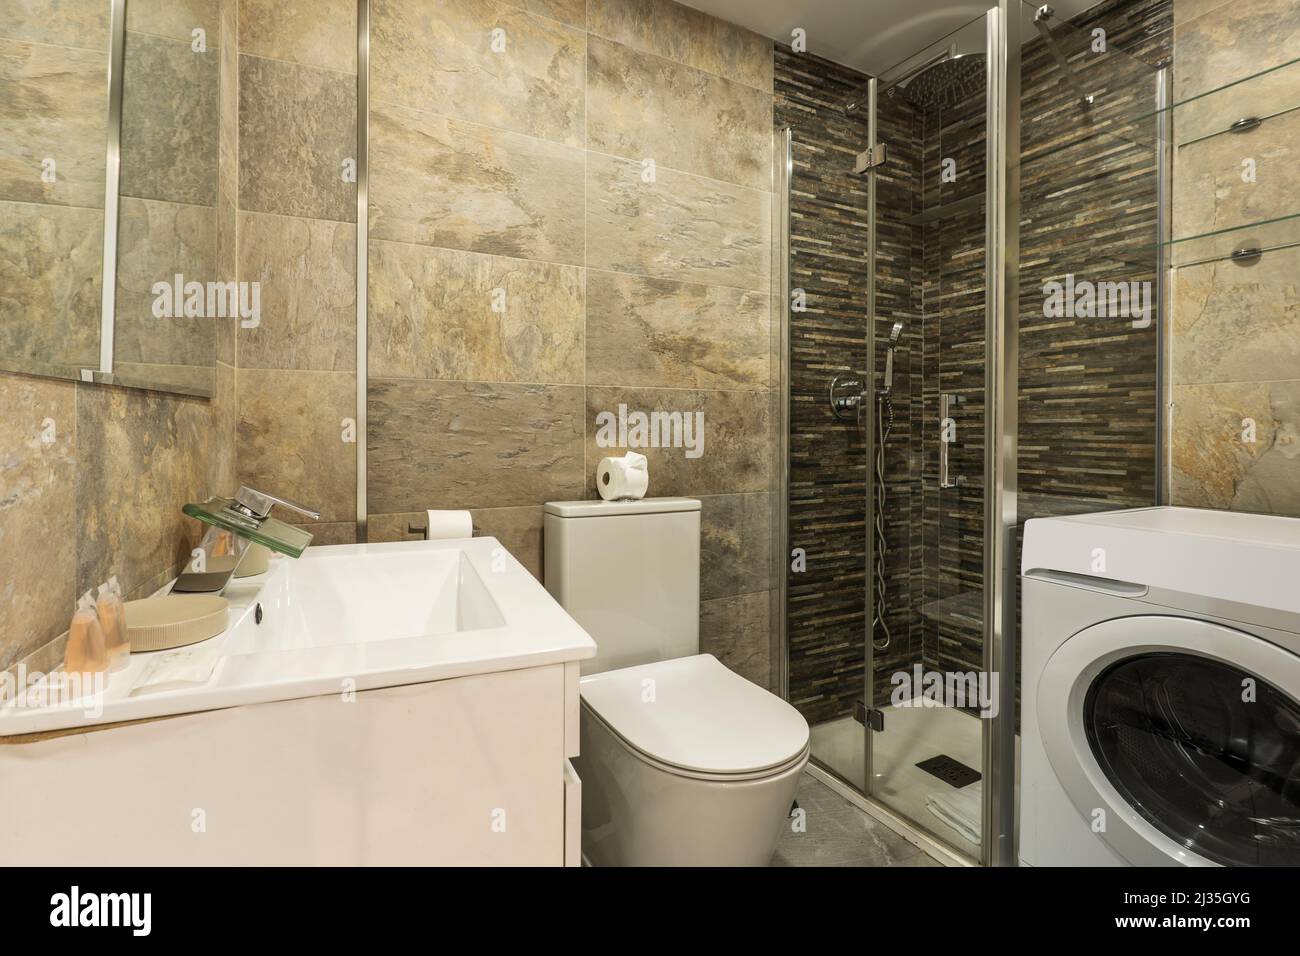 Cabine de douche avec écran en verre coulissant, lave-linge blanc, carrelage en marbre et évier en porcelaine blanche Banque D'Images